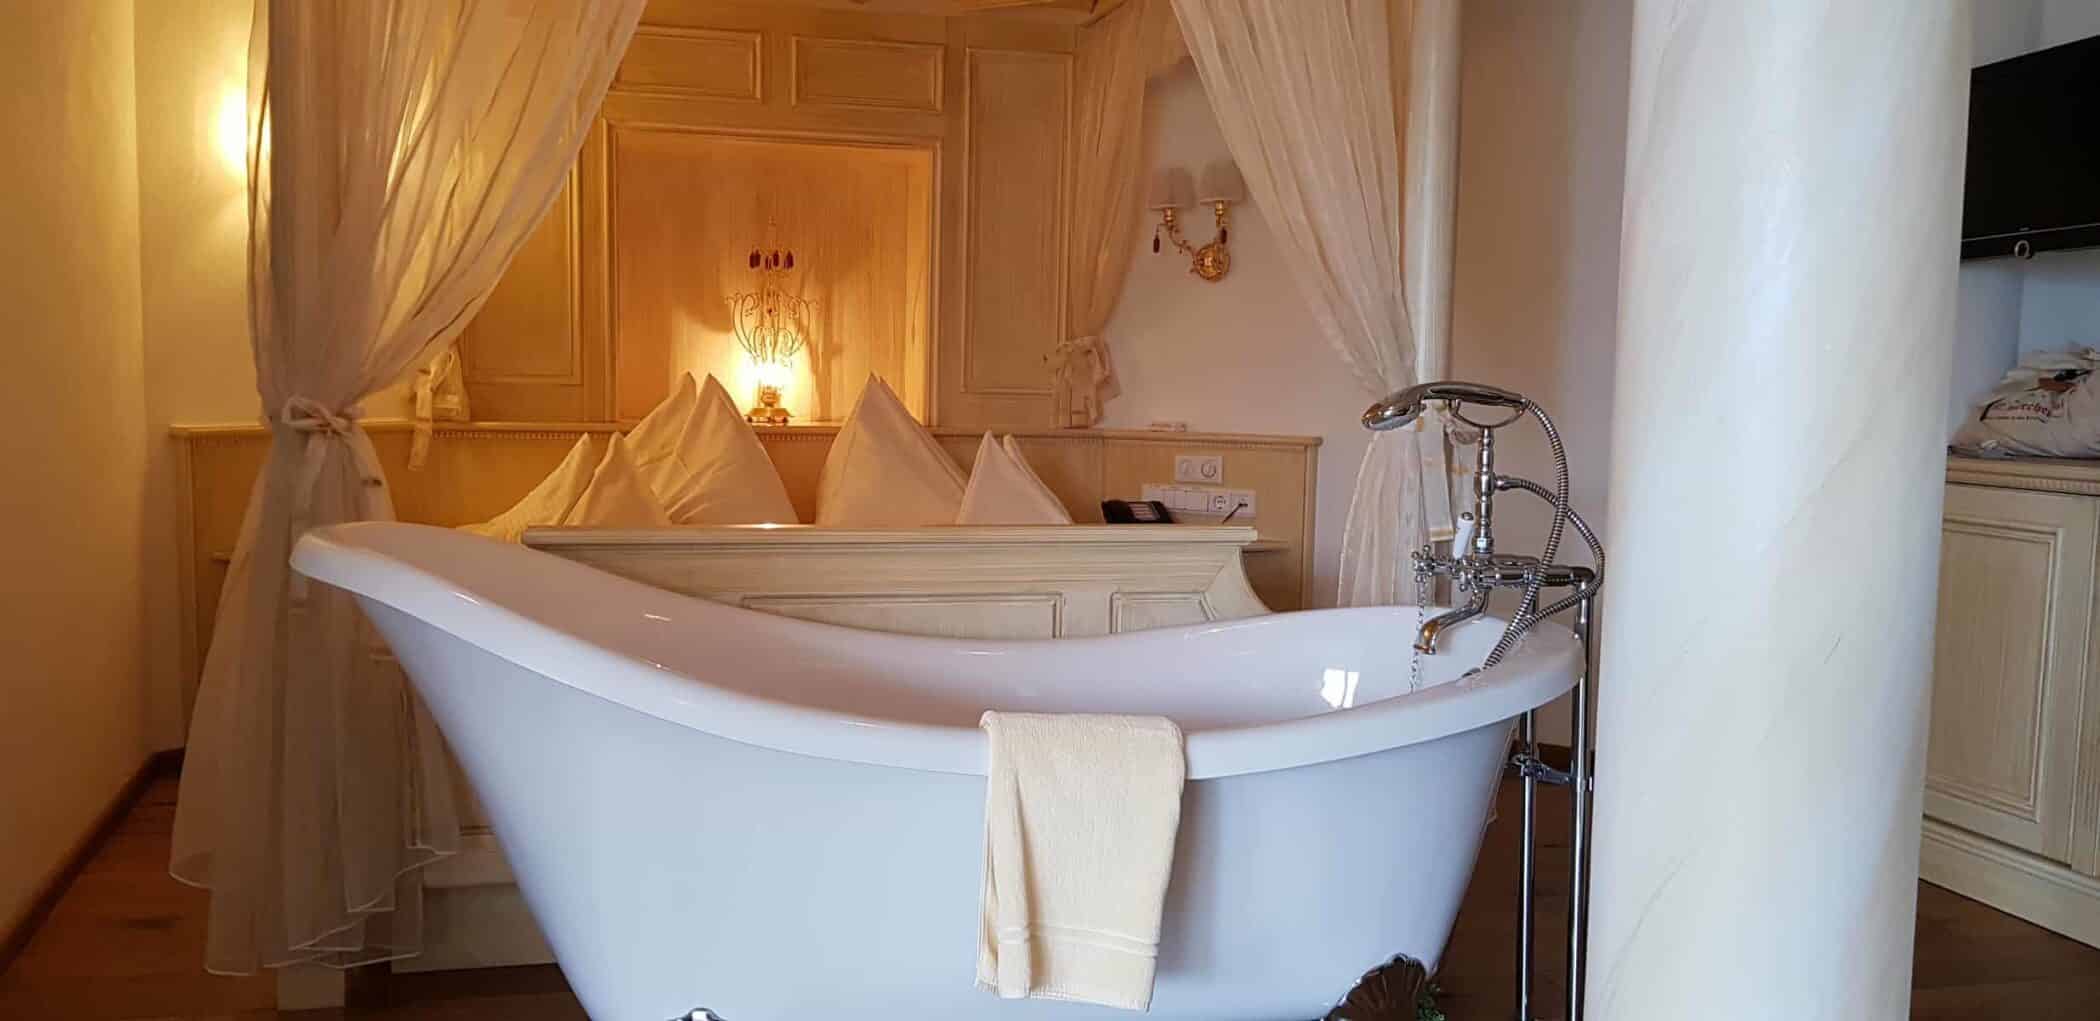 Lärchenhof suite med 2 badeværelser + dette charmerende retro badekar !